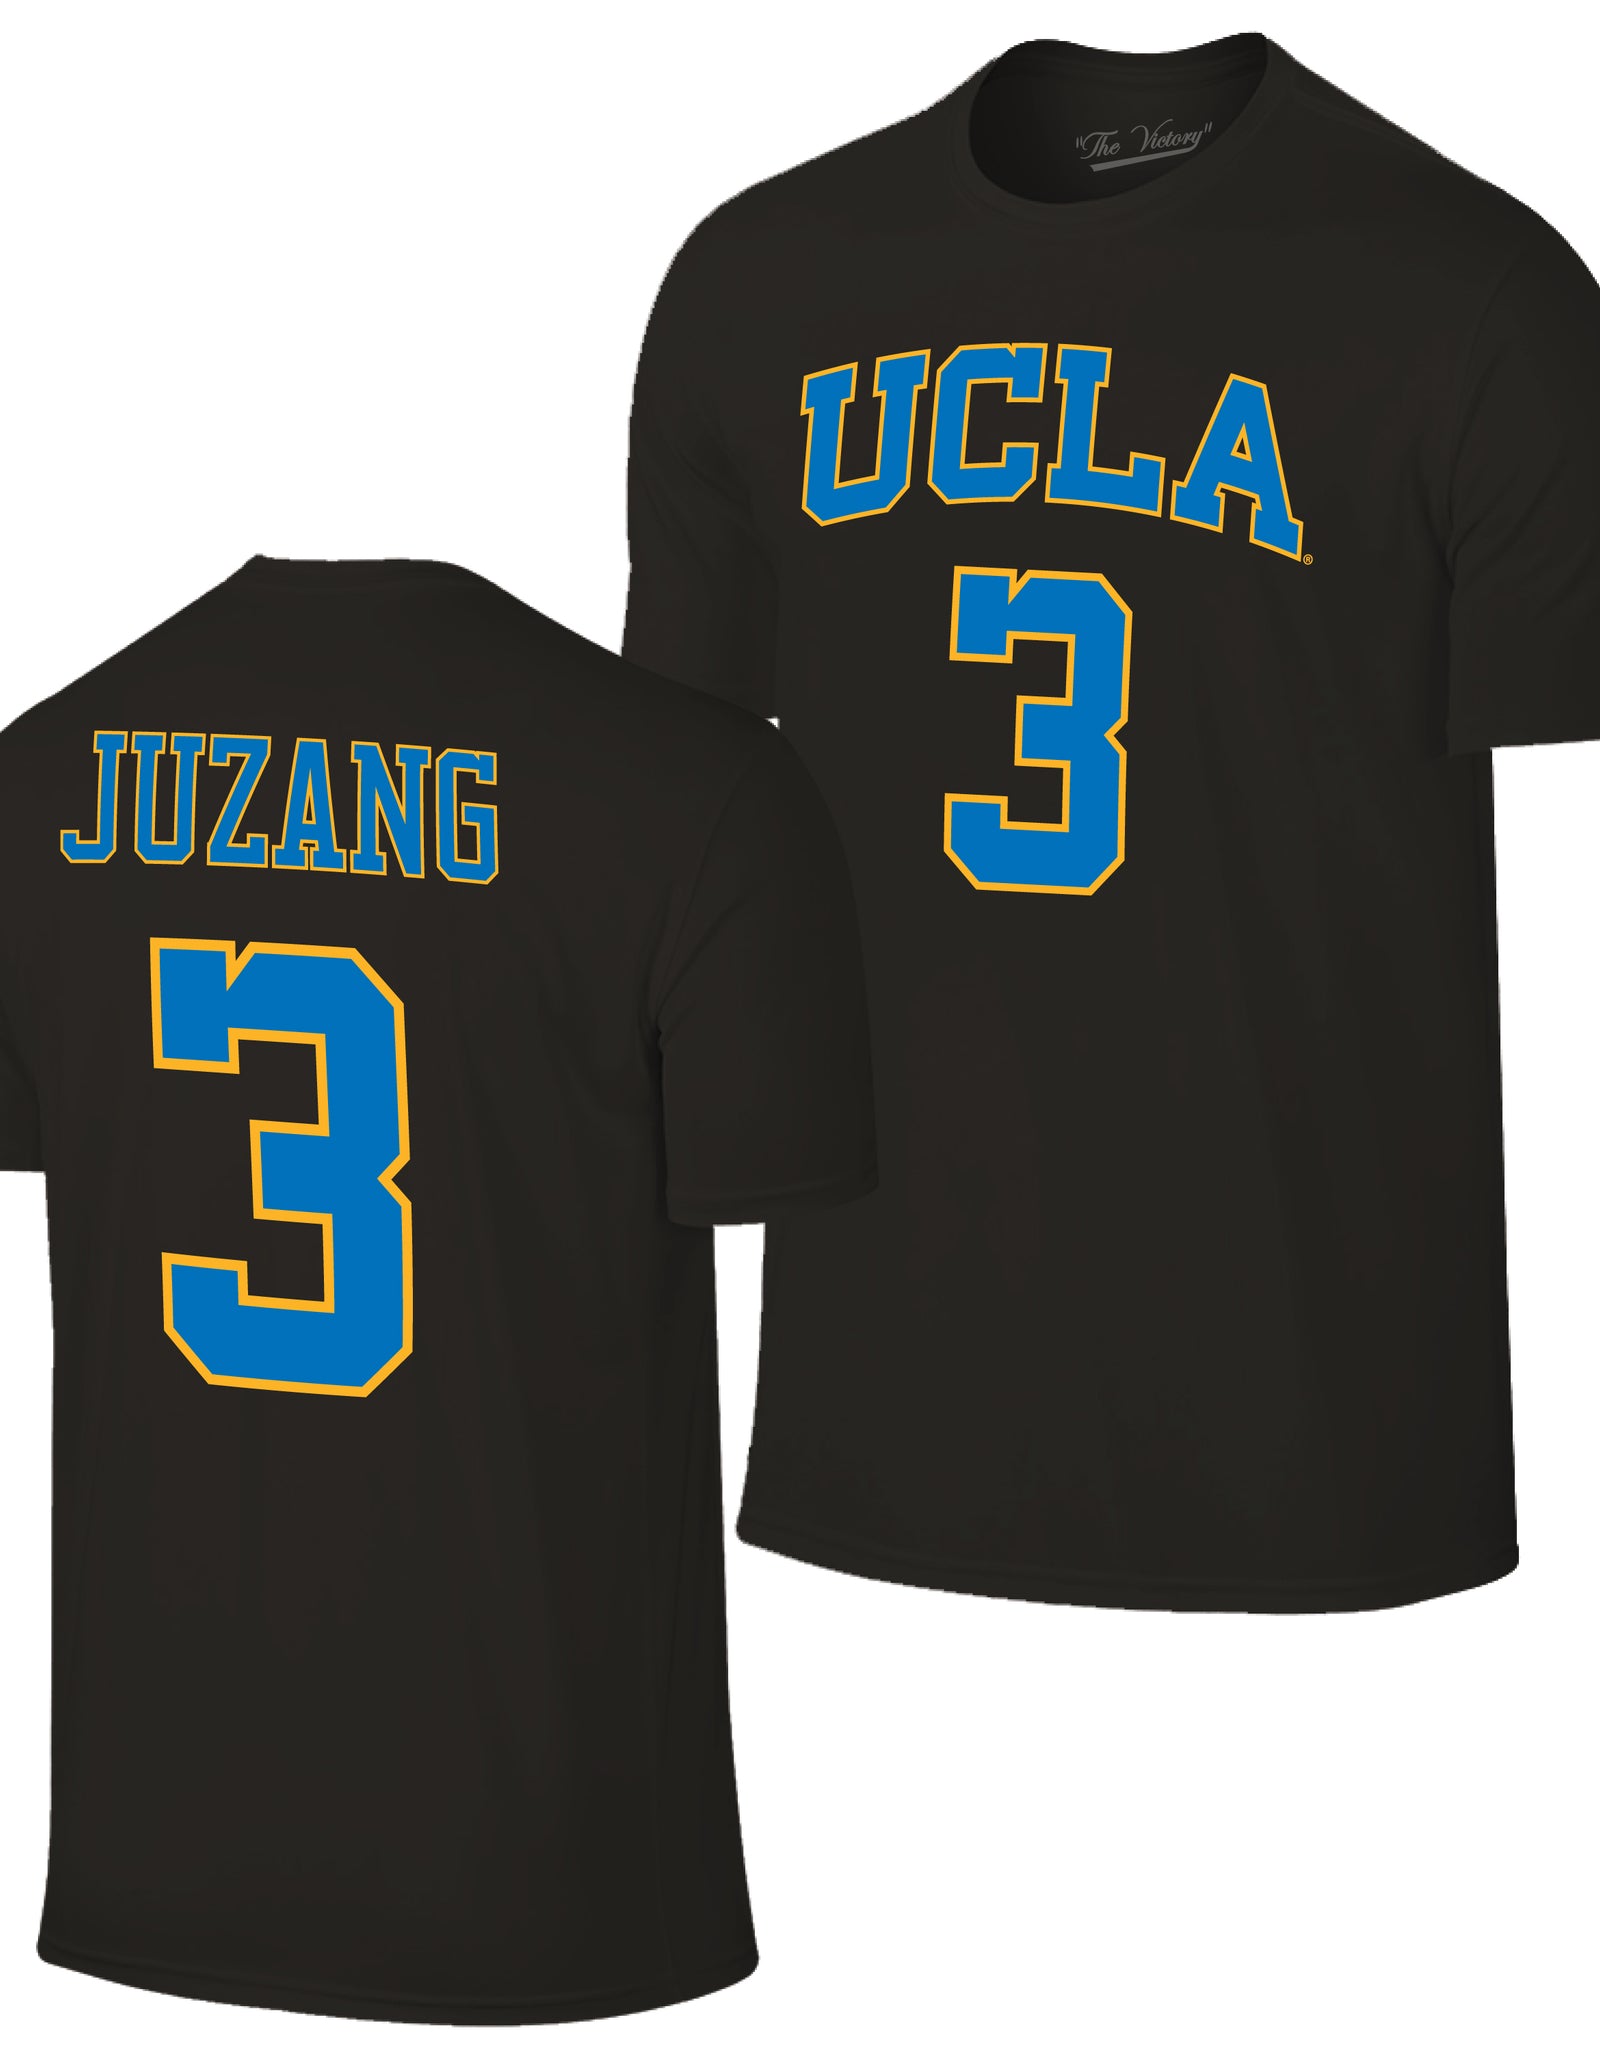 Retro Brand UCLA Basketball White Jersey #3 Juzang